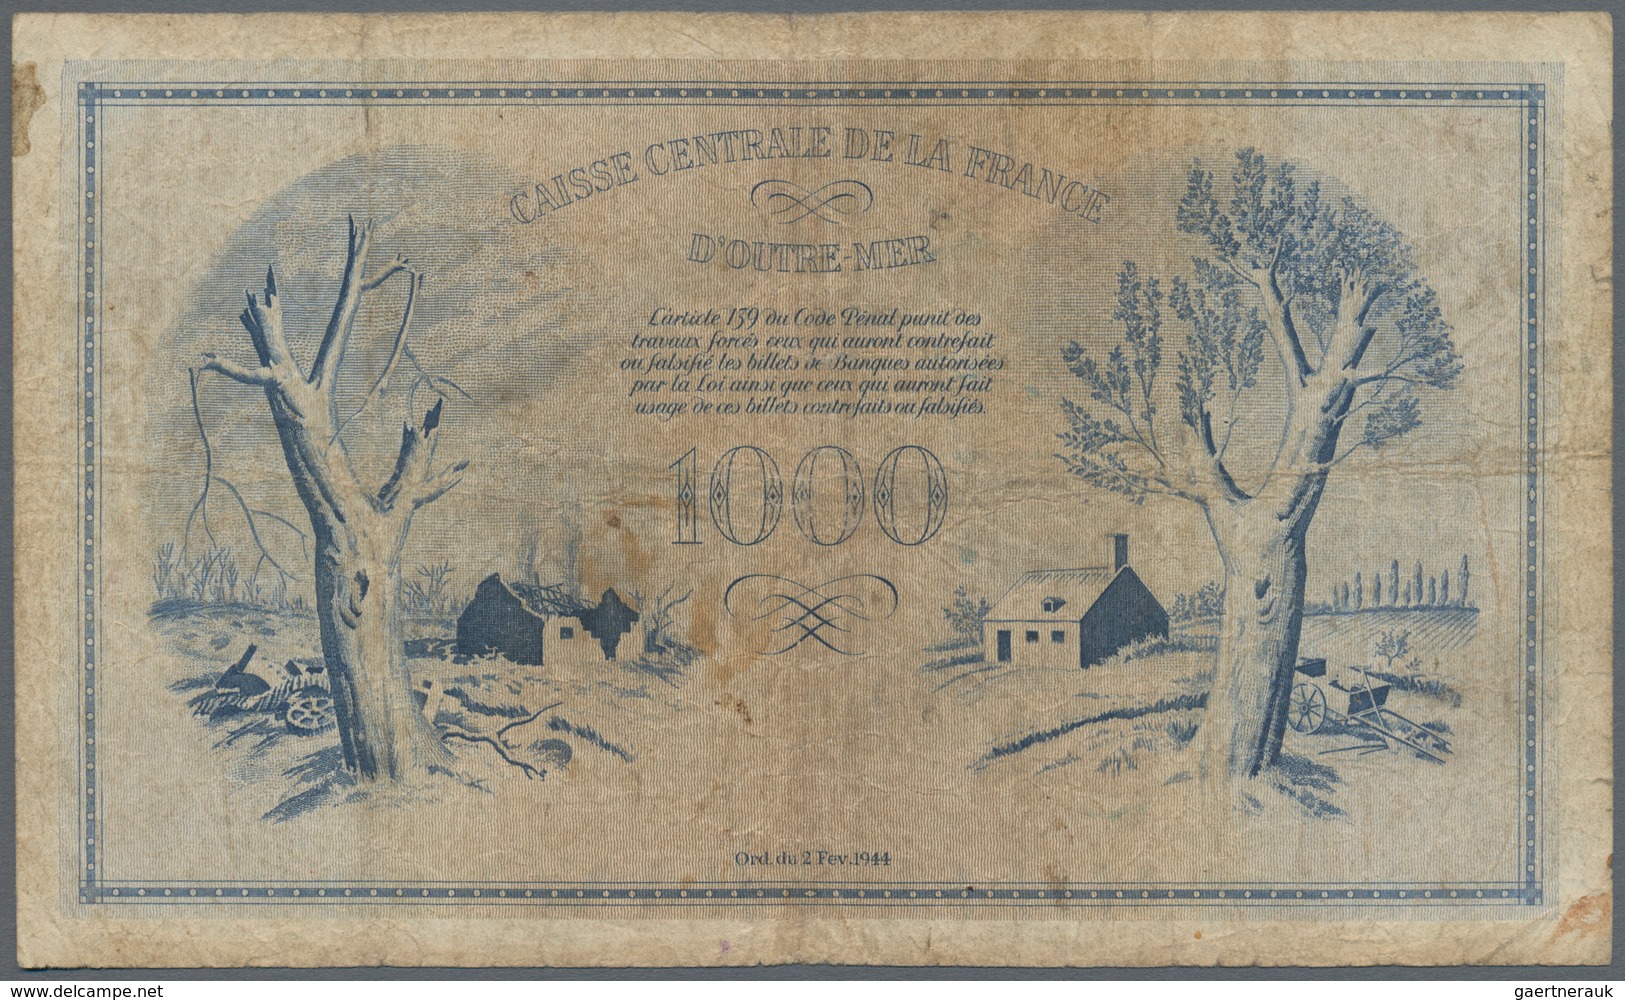 Guadeloupe: Caisse Centrale De La France D'Outre-Mer 1000 Francs 1944 With Watermark, P.30b, Extraor - Otros – América